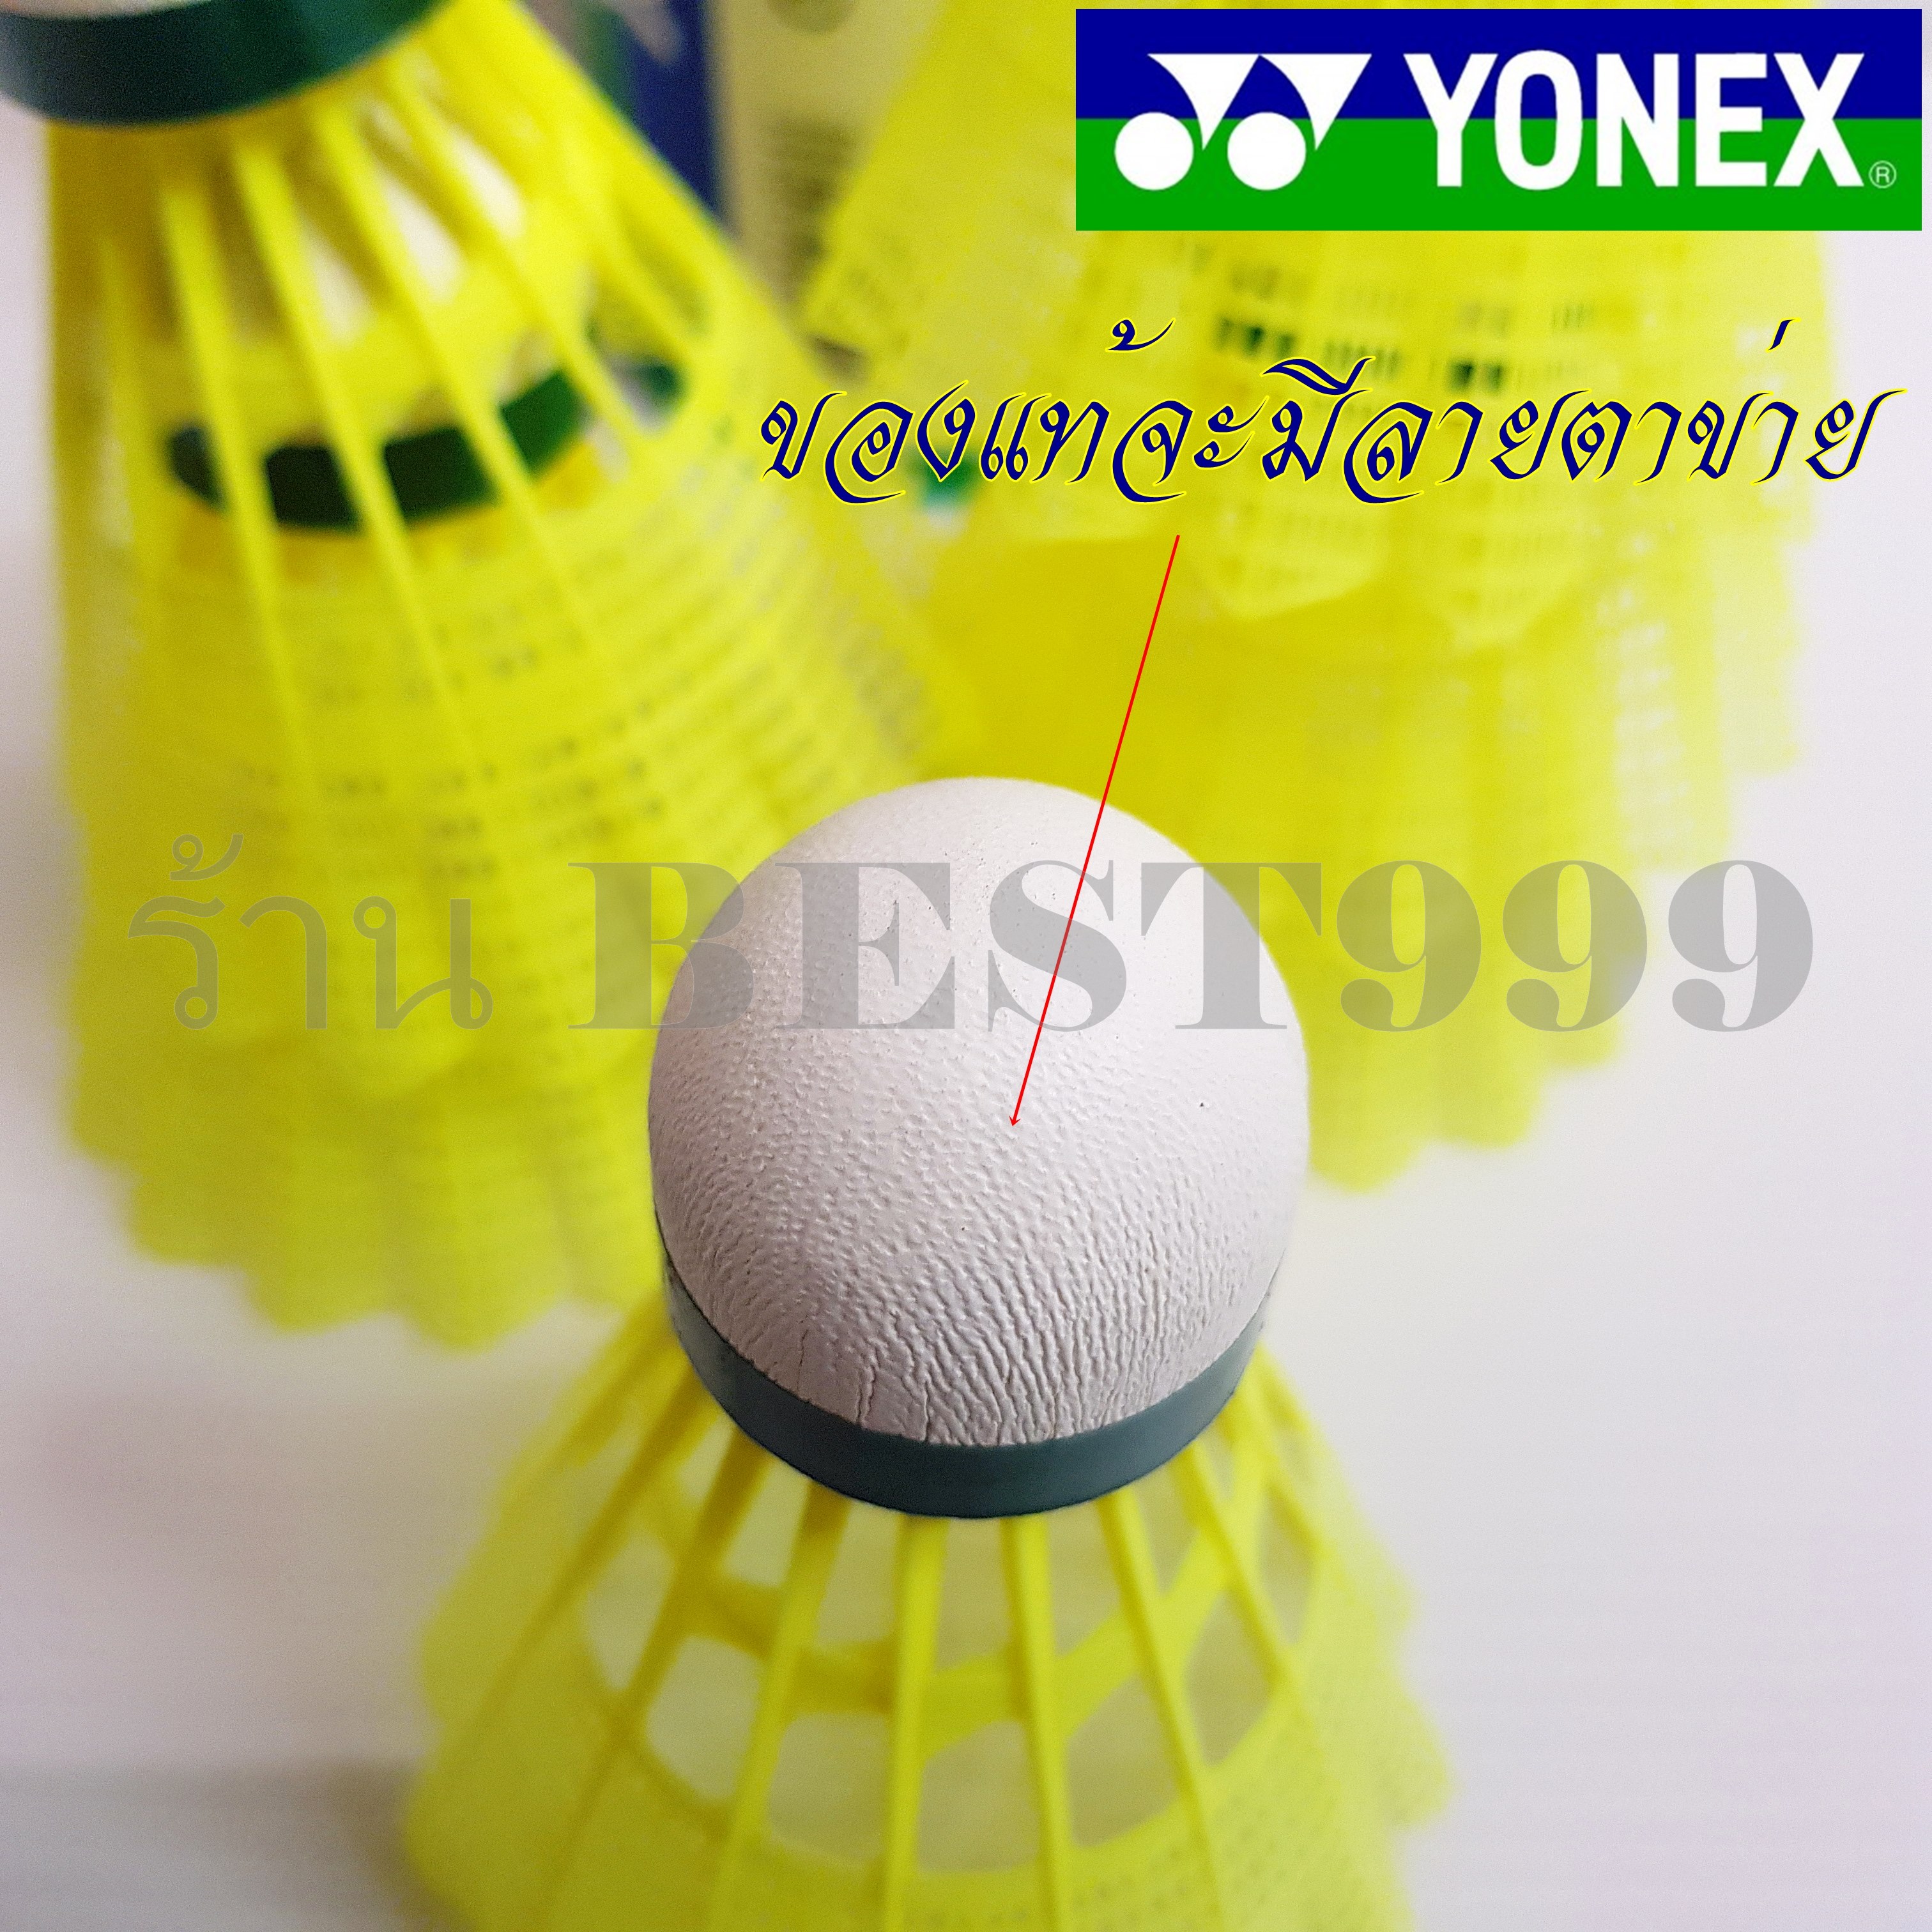 รูปภาพเพิ่มเติมเกี่ยวกับ ลูกแบดมินตัน YONEX รุ่น MAVIS 350 แท้100% (6ลูก/1หลอด) นำเข้าจากญี่ปุ่น ลูกขนไก่คุณภาพสูง ลูกแบดมินตันพลาสติก ลูกแบด ขนไก่ ลูกแบดมินตัน badminton ball